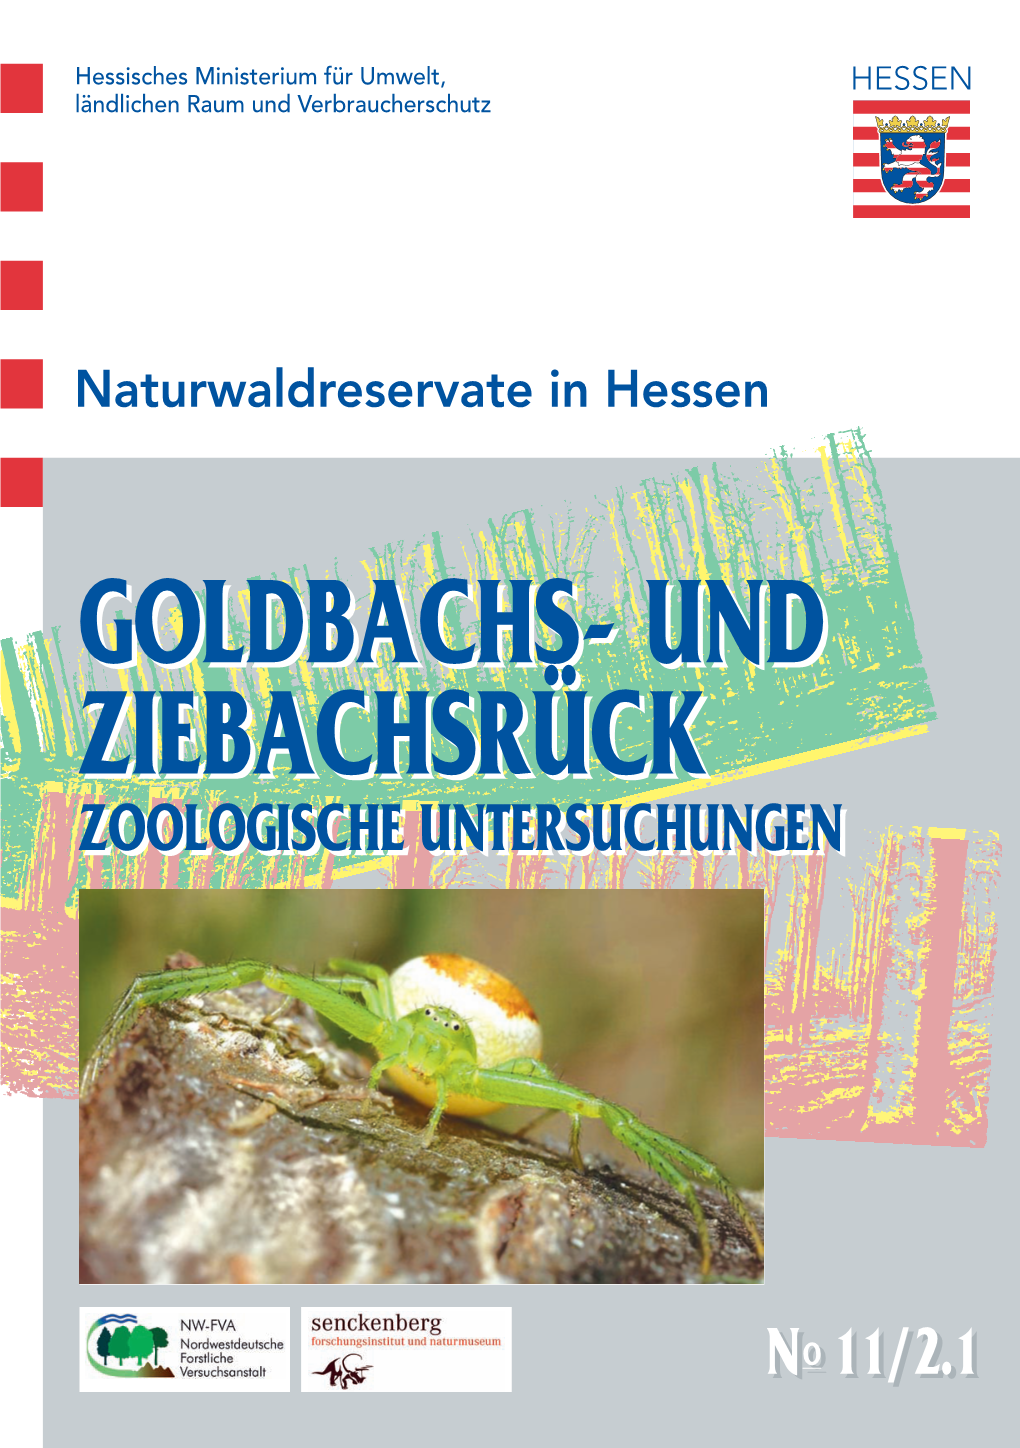 Goldbachs- Und Ziebachsrück – Zoologische Untersuchungen 1994-1996, Teil 1 Dorow, W